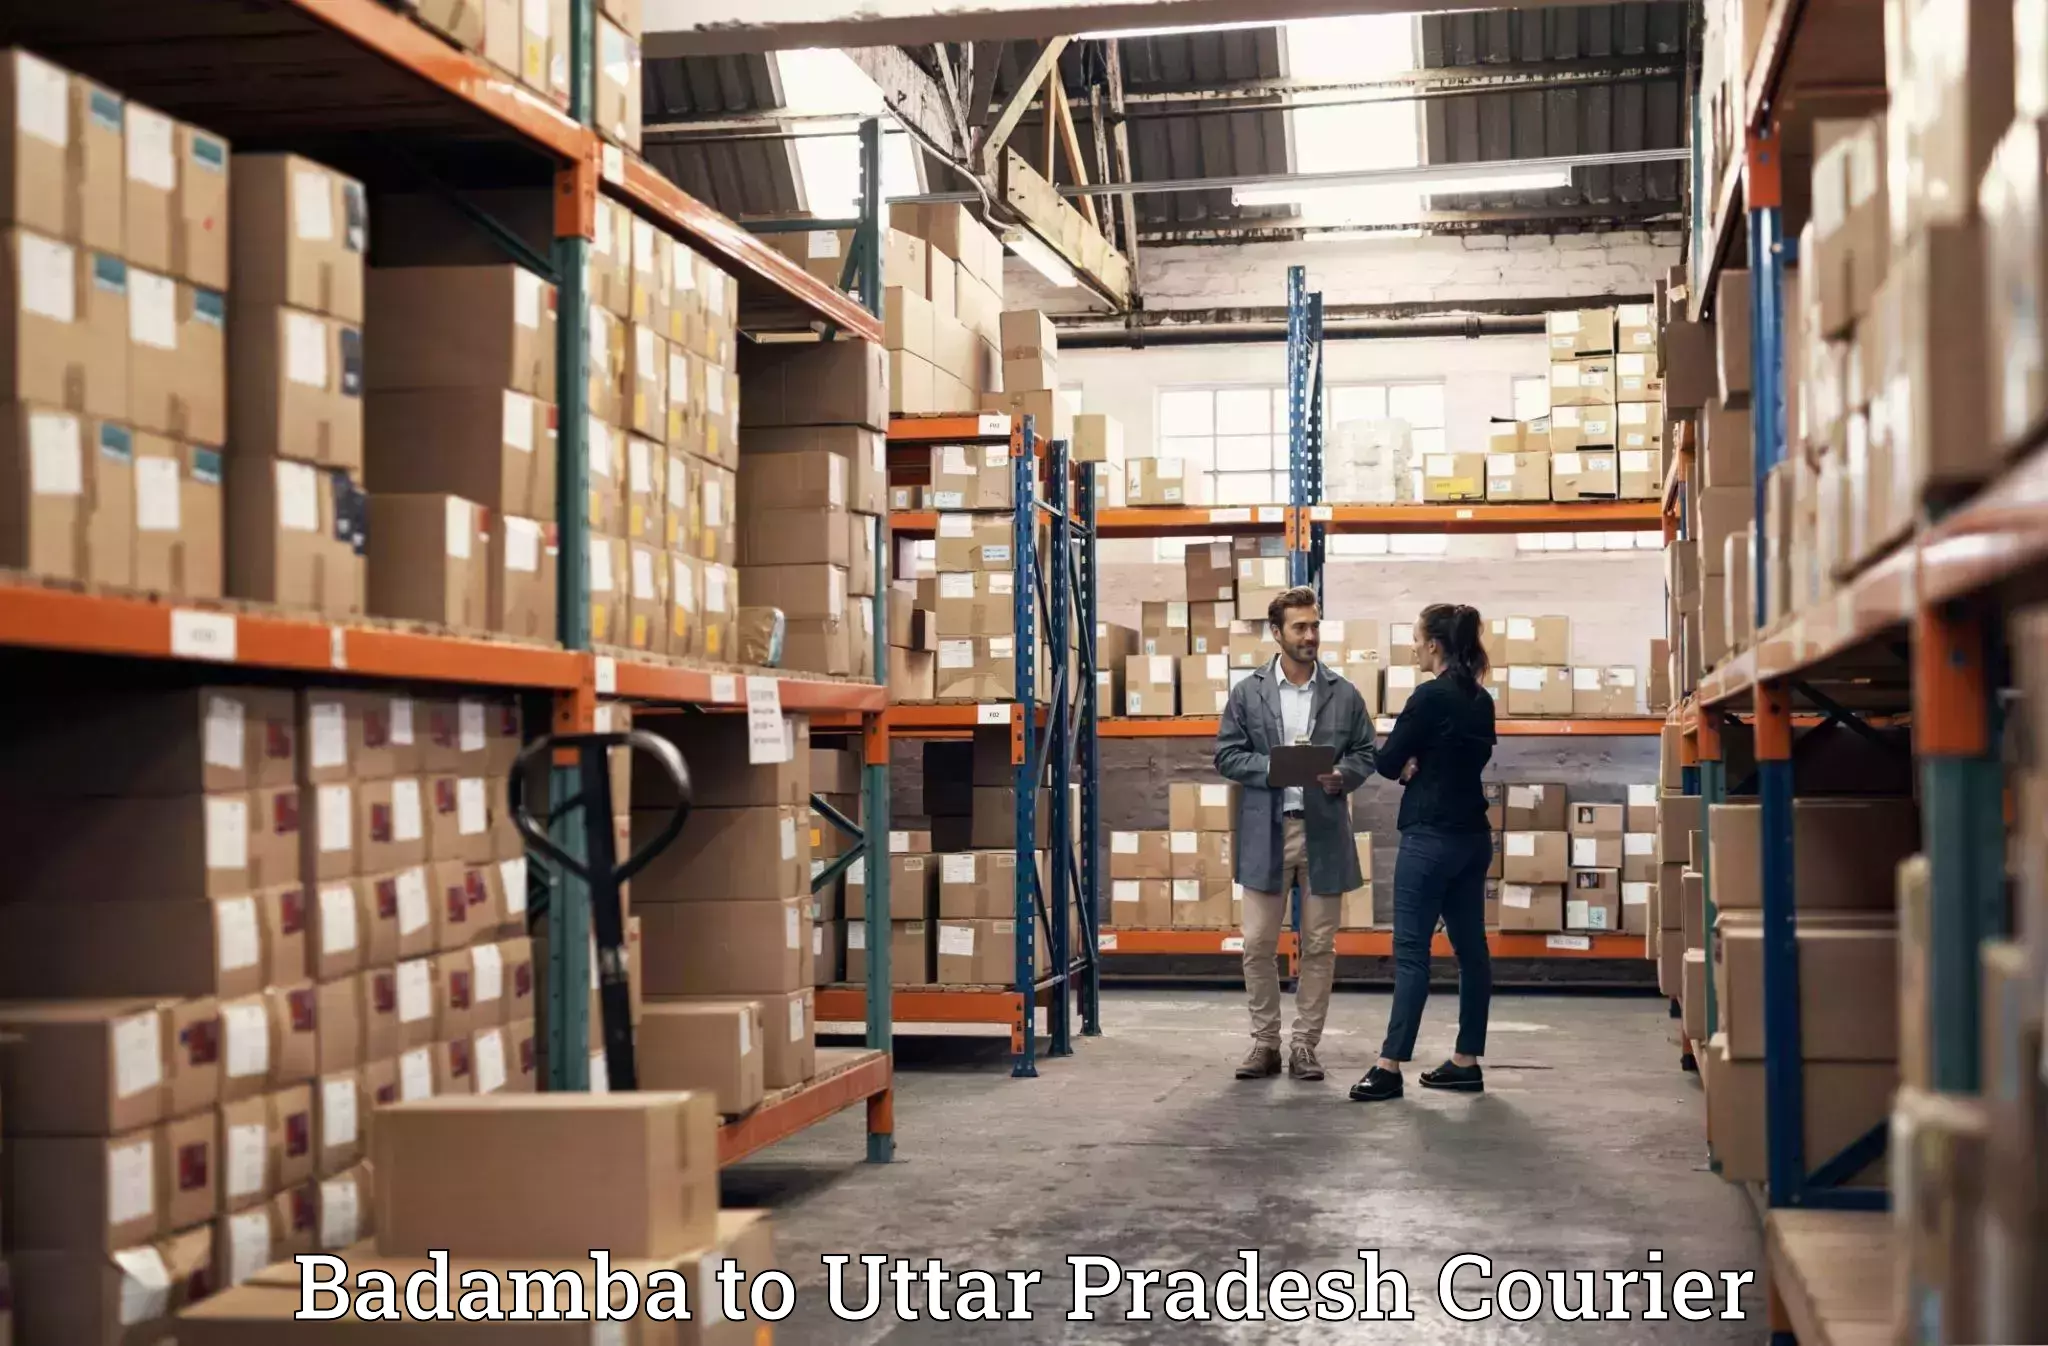 Professional movers Badamba to Uttar Pradesh